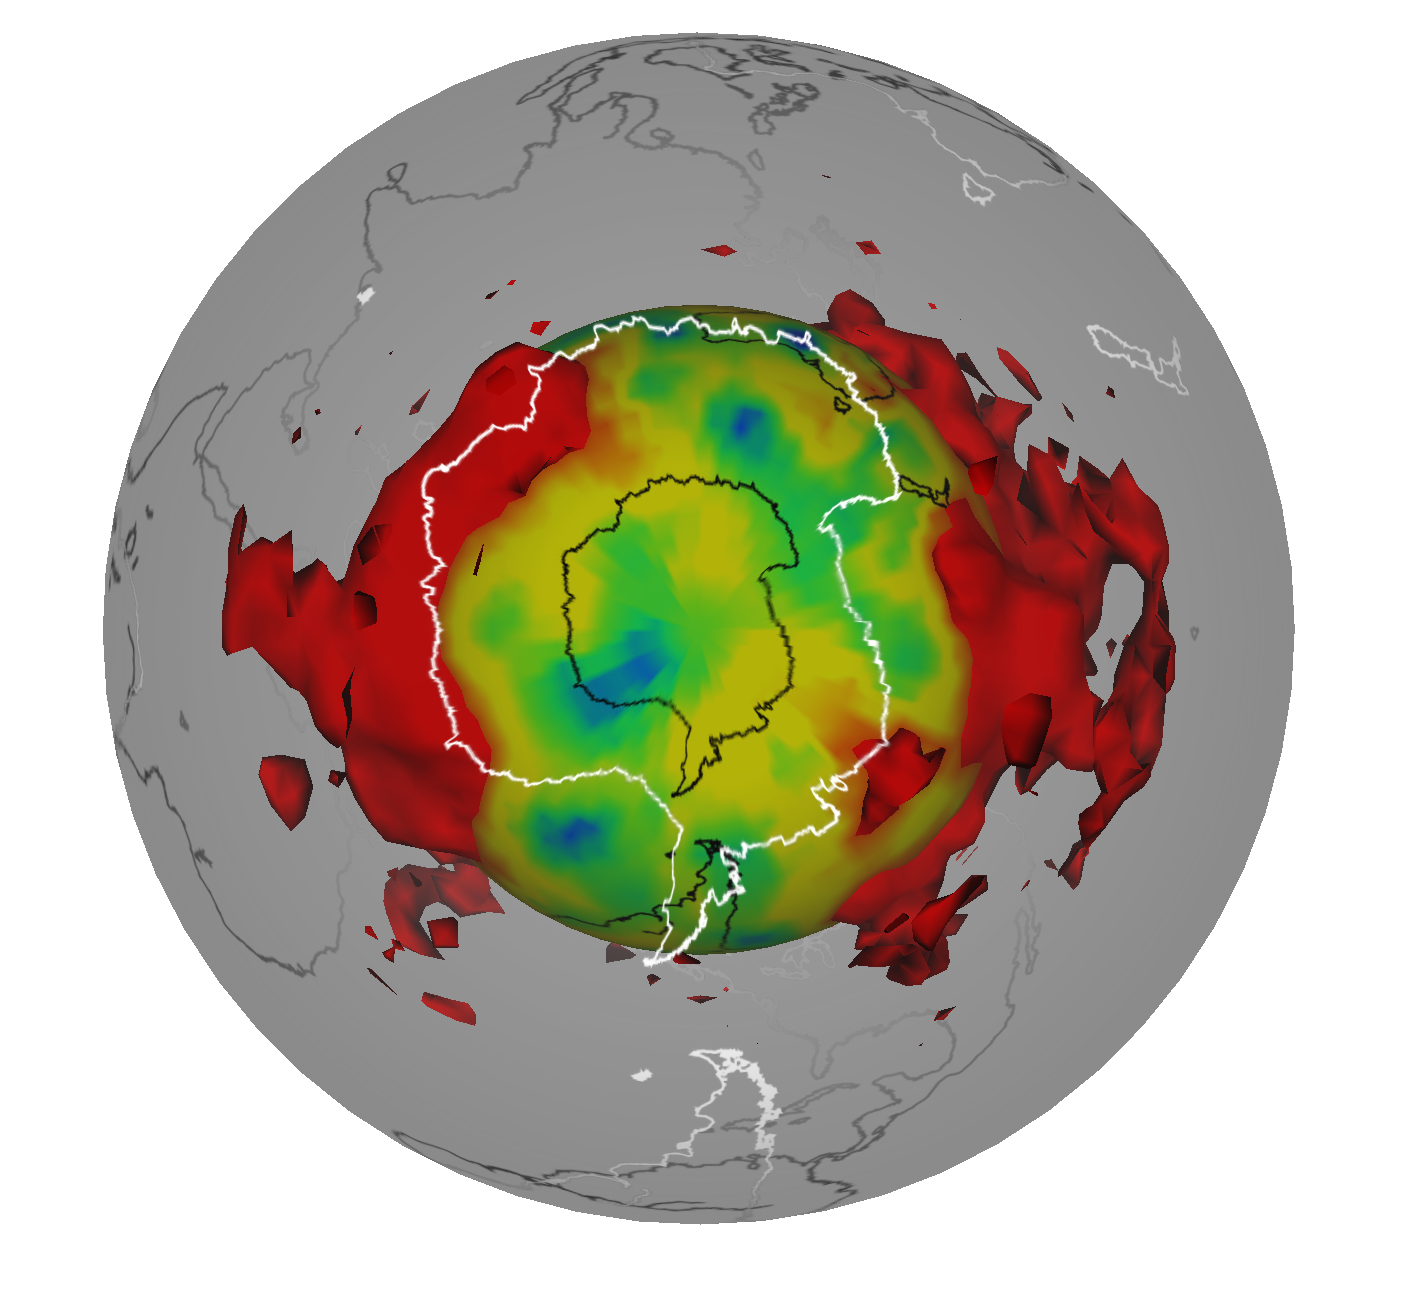 A rengéshullámok elemzésével feltérképezett két LLSVP buborék az alsó köpenyben, mintha az Antarktisz felöl néznénk őket